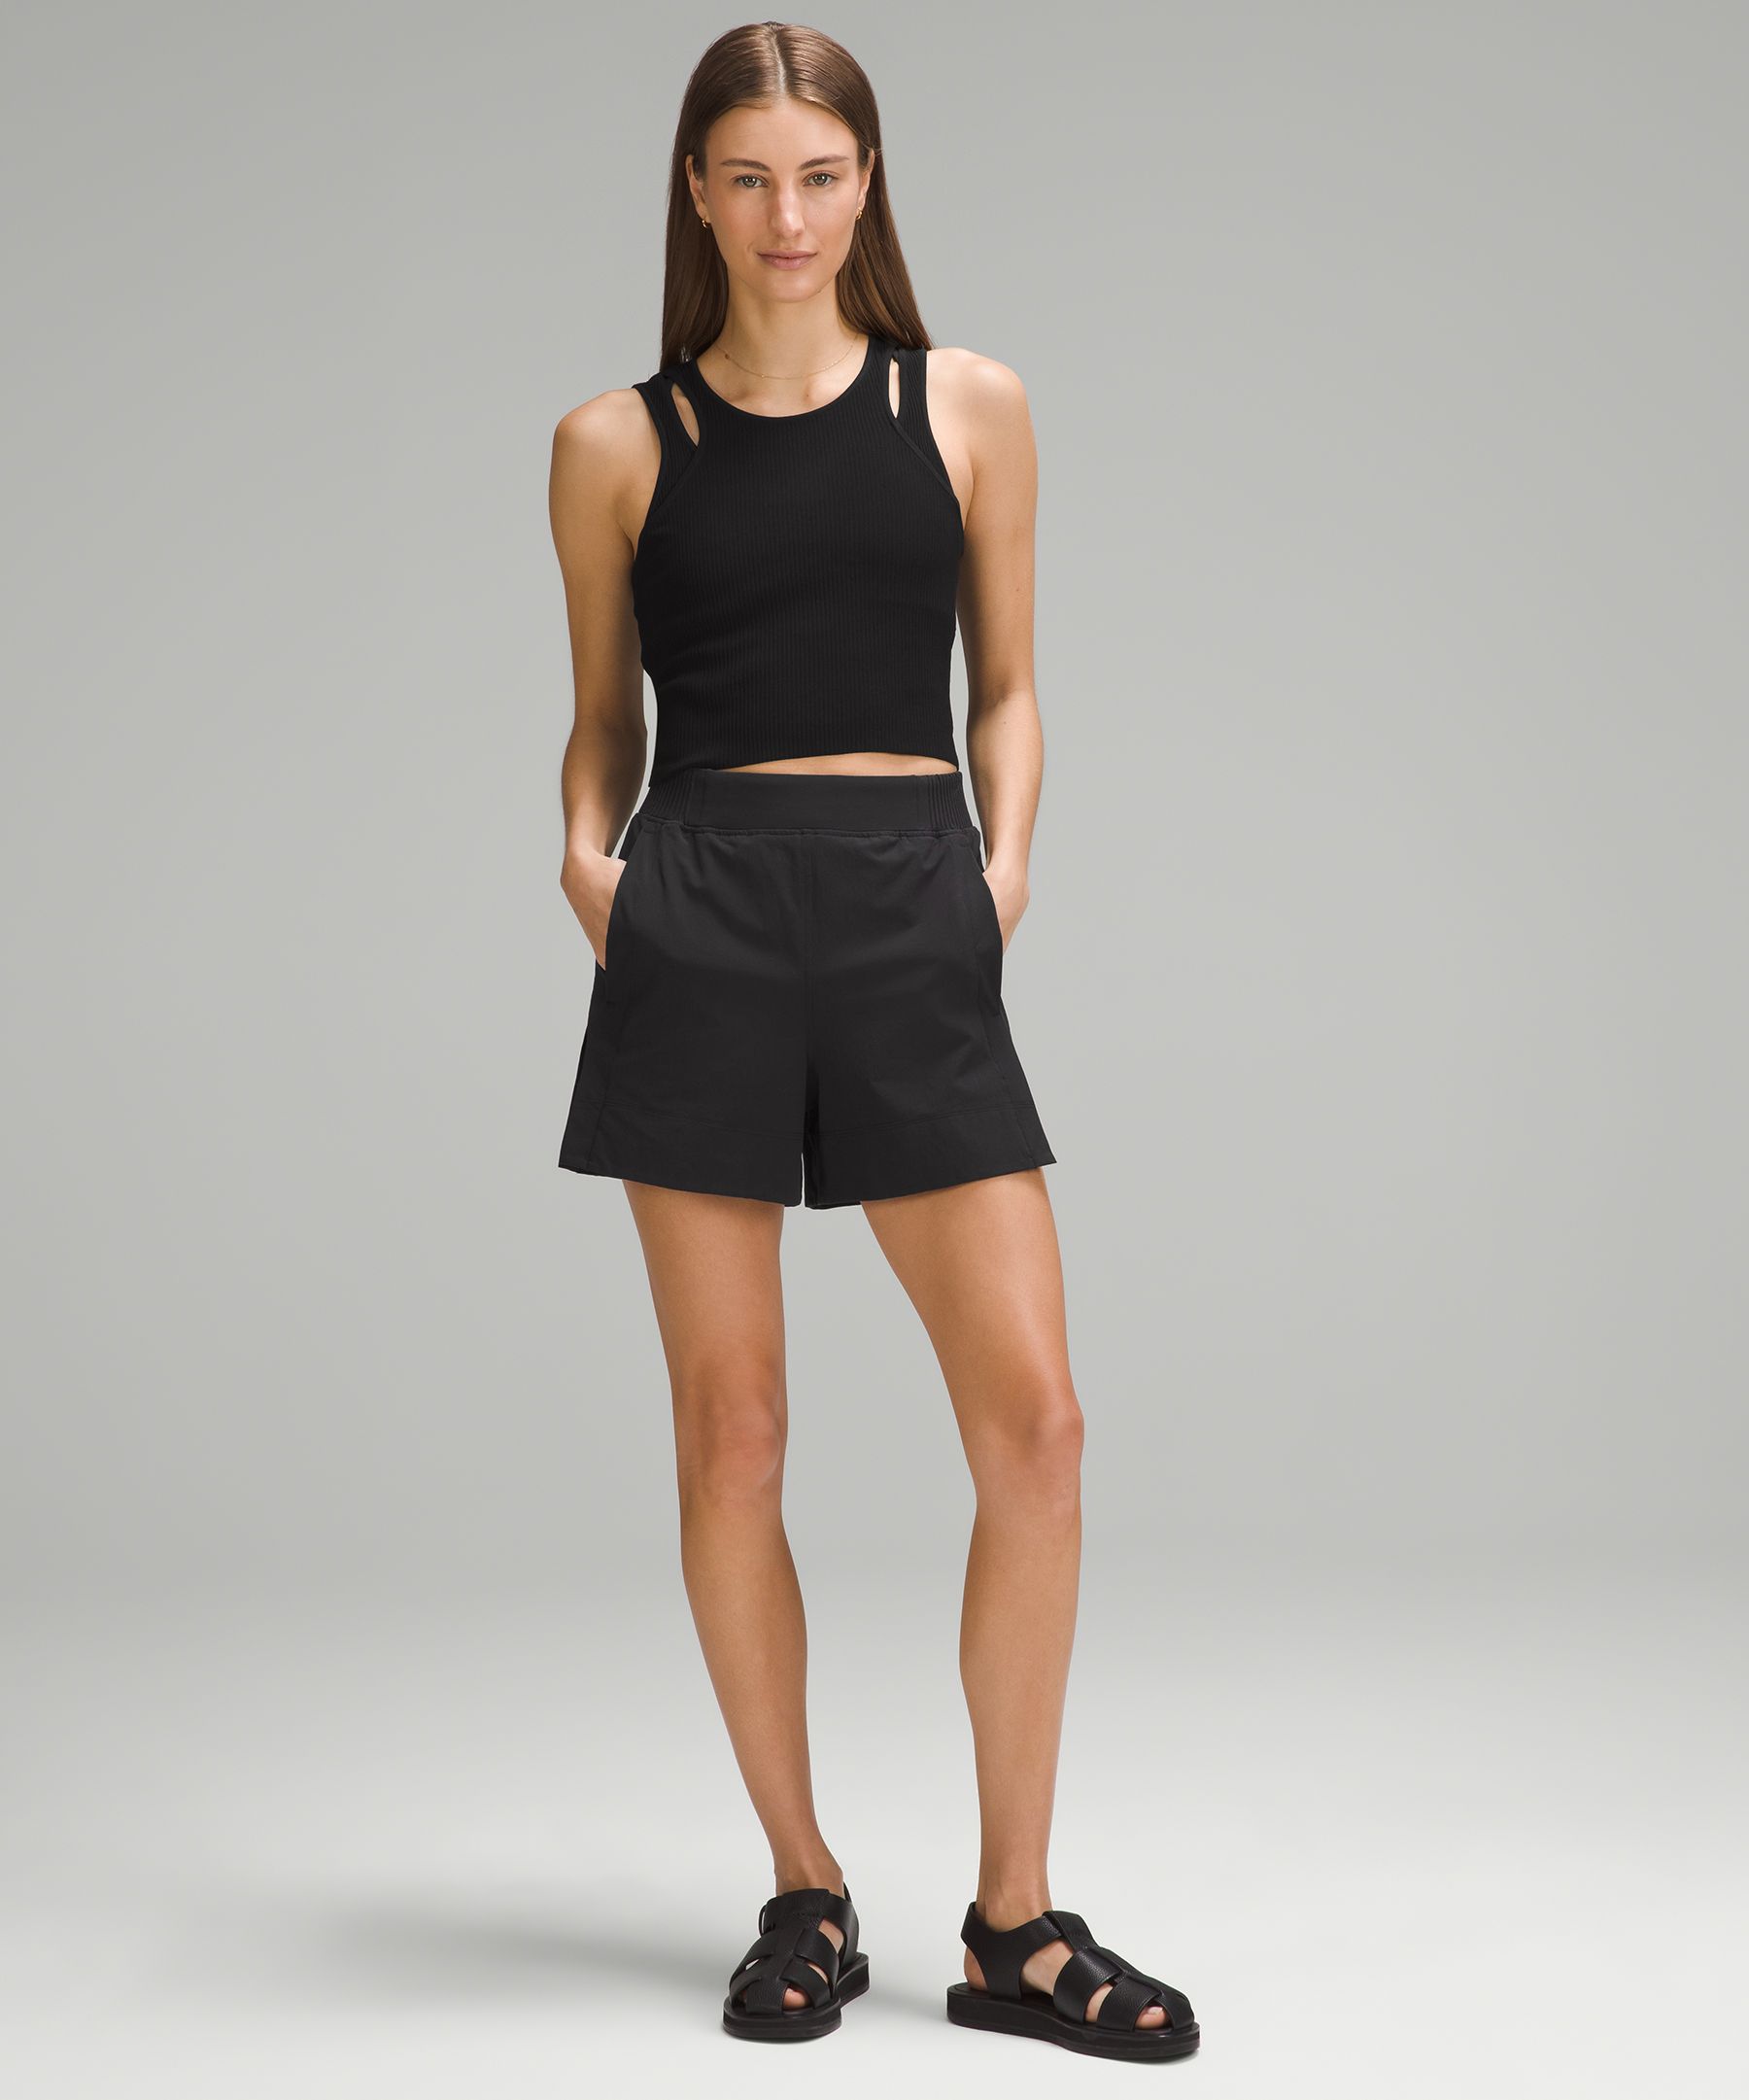 Black Shorts - Crinkle Woven Shorts - Pull-On Shorts - Lulus